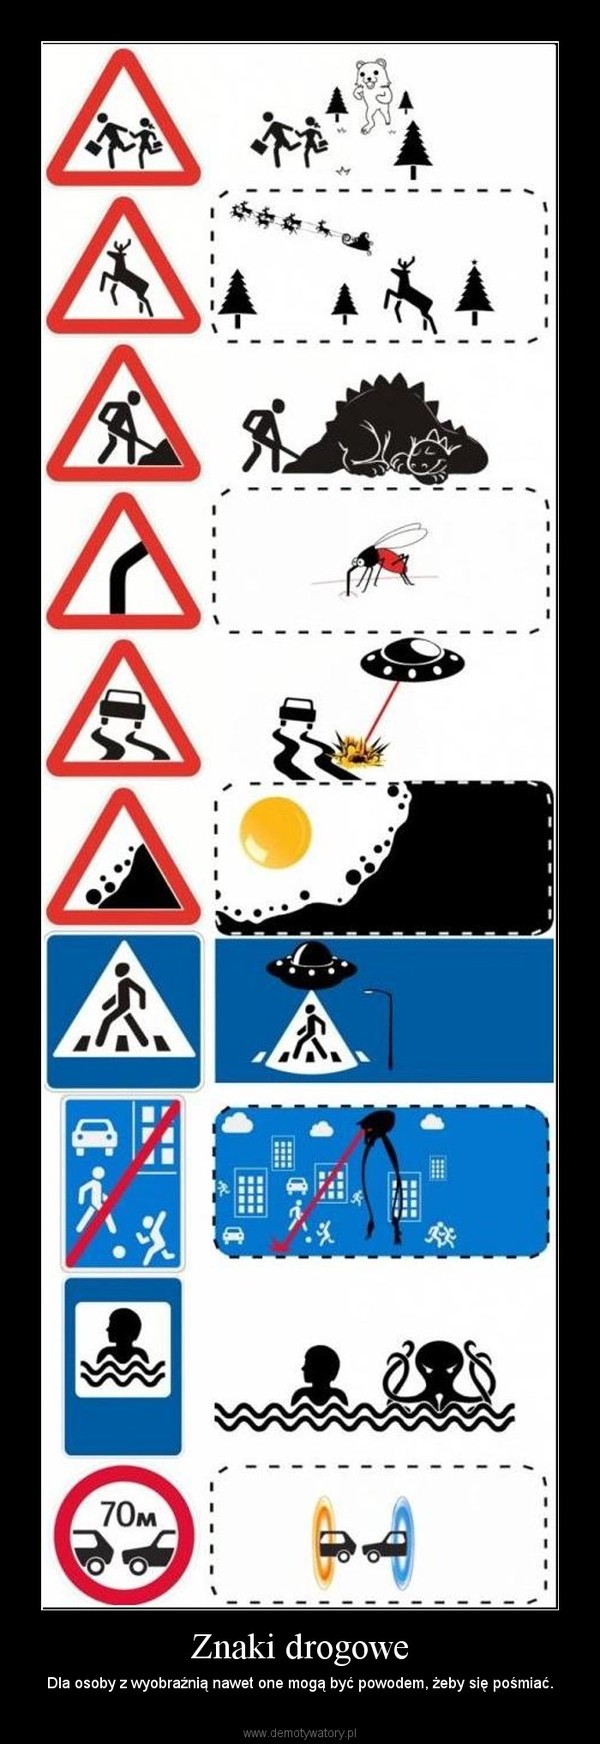 Znaki drogowe – Dla osoby z wyobraźnią nawet one mogą być powodem, żeby się pośmiać. 